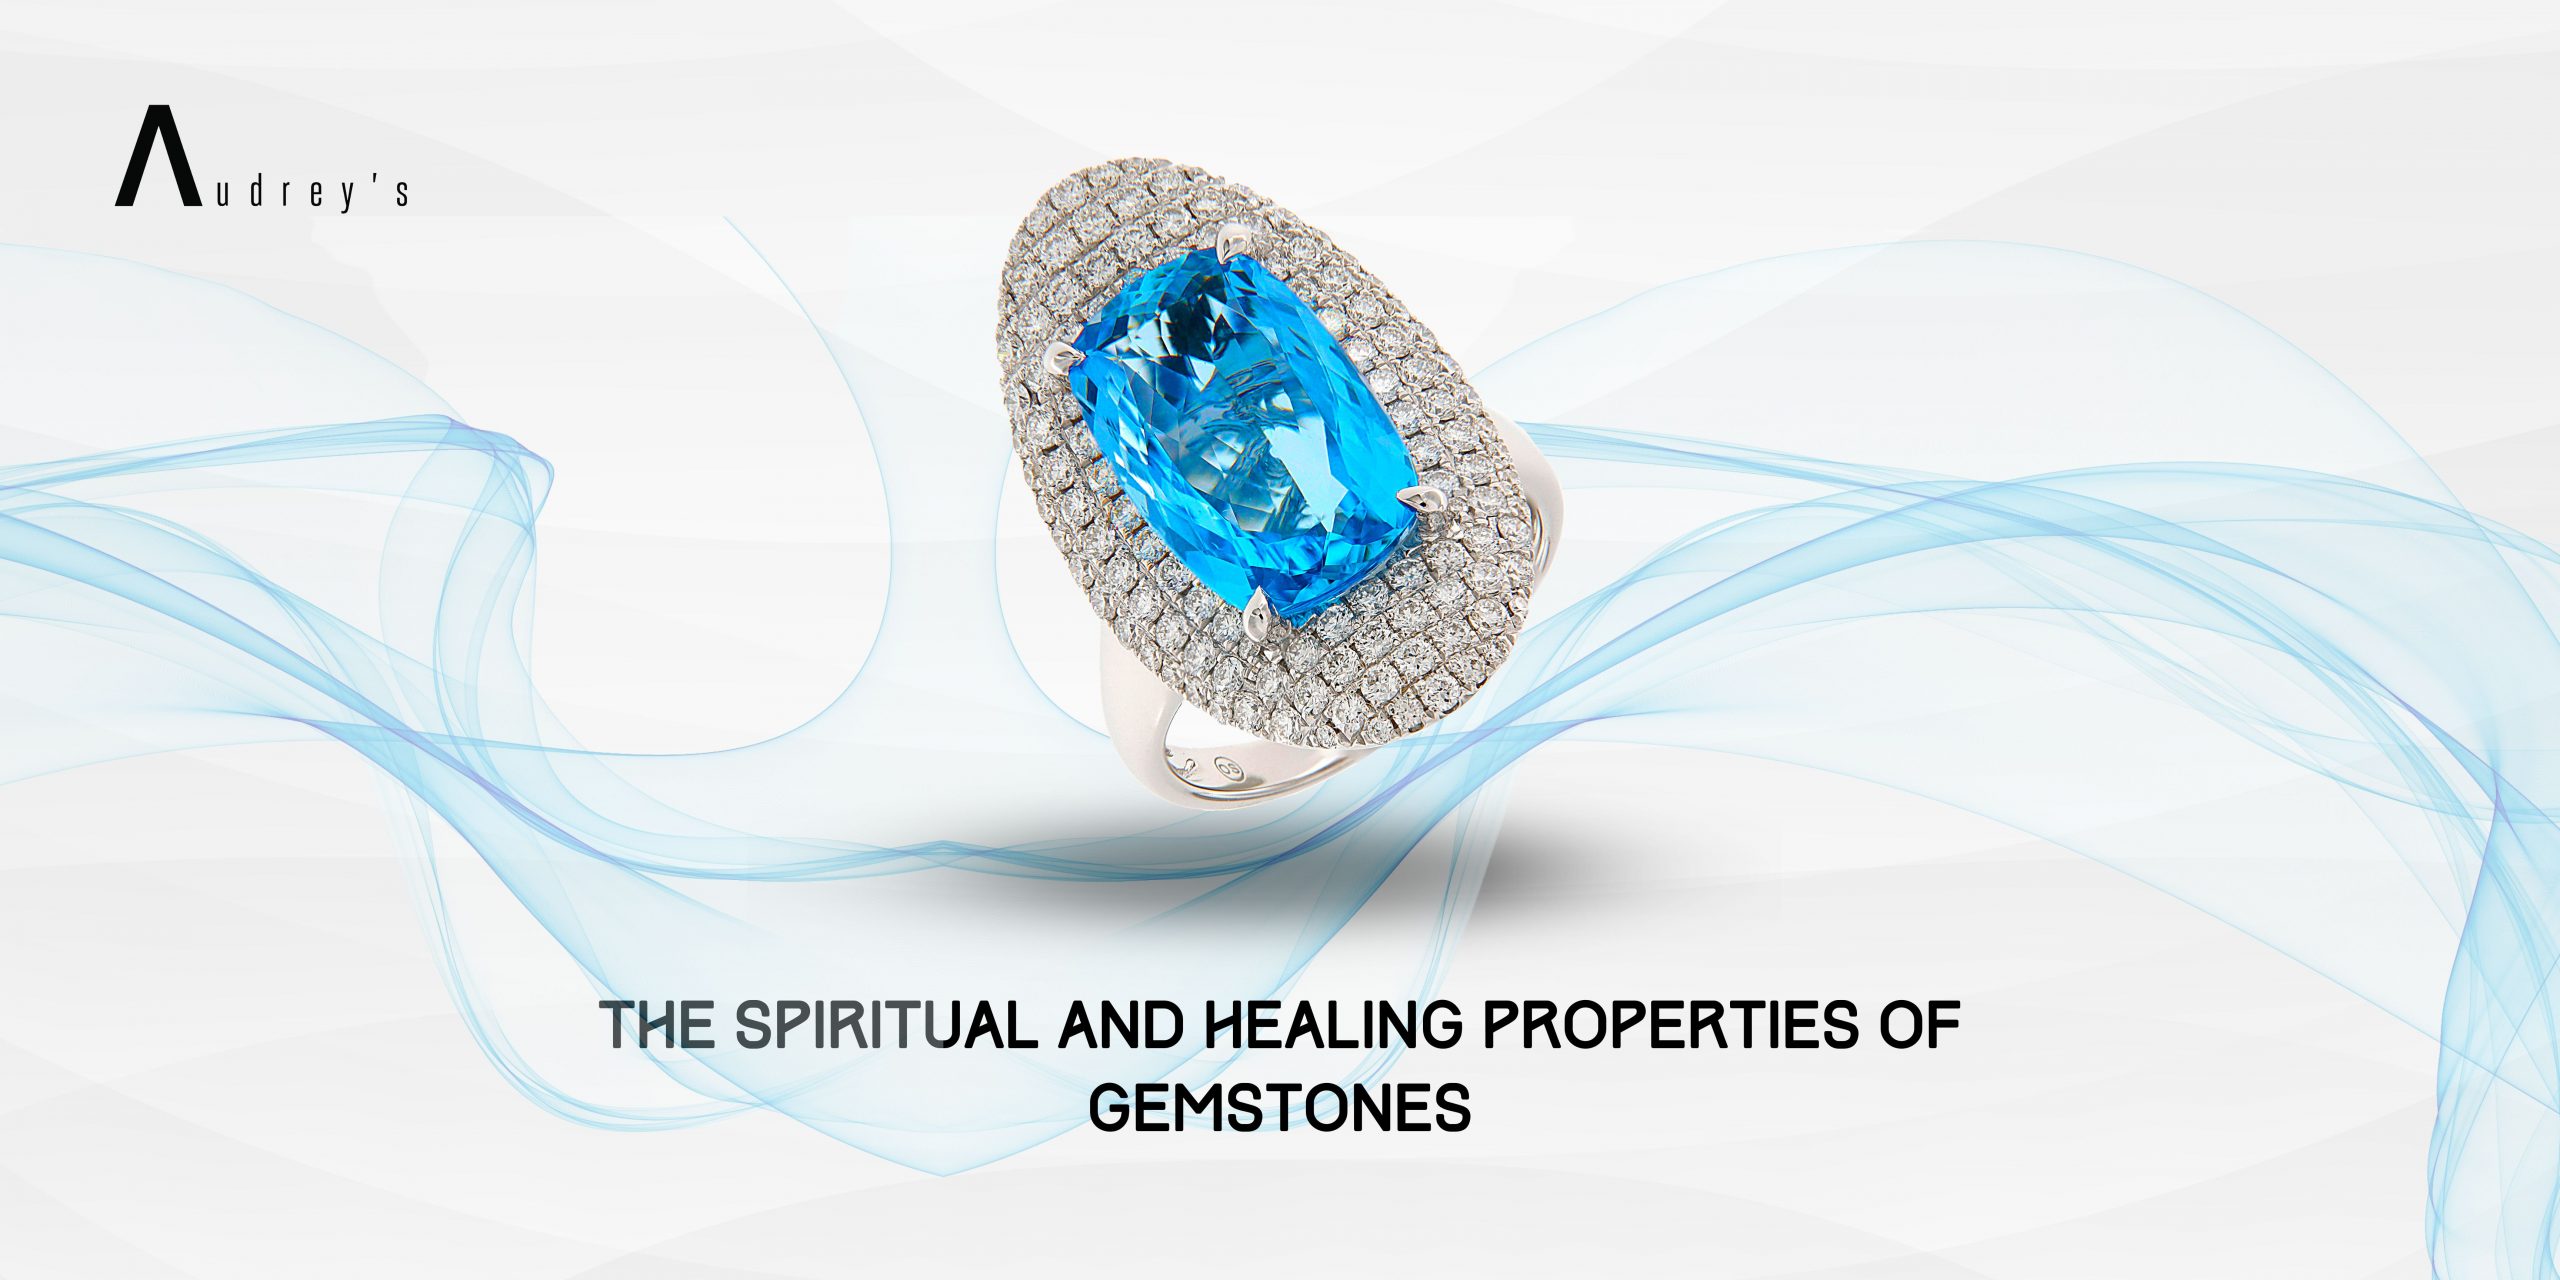 Gemstone, Jewelry